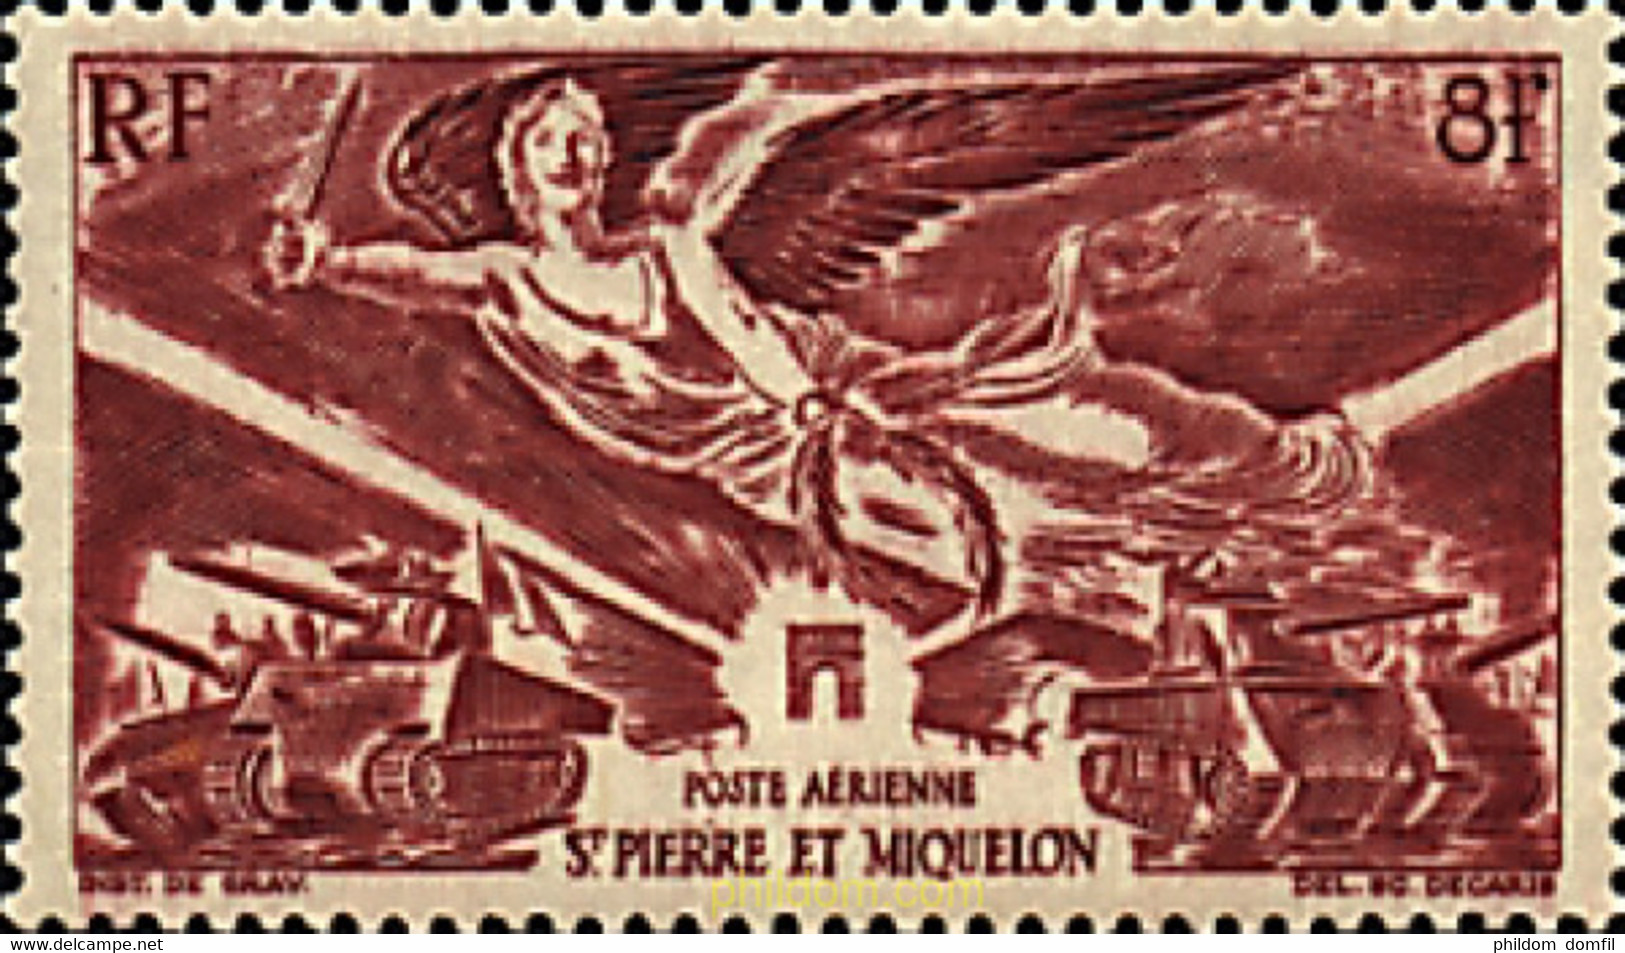 42060 MNH SAN PEDRO Y MIQUELON 1946 ANIVERSARIO DE LA VICTORIA - Oblitérés